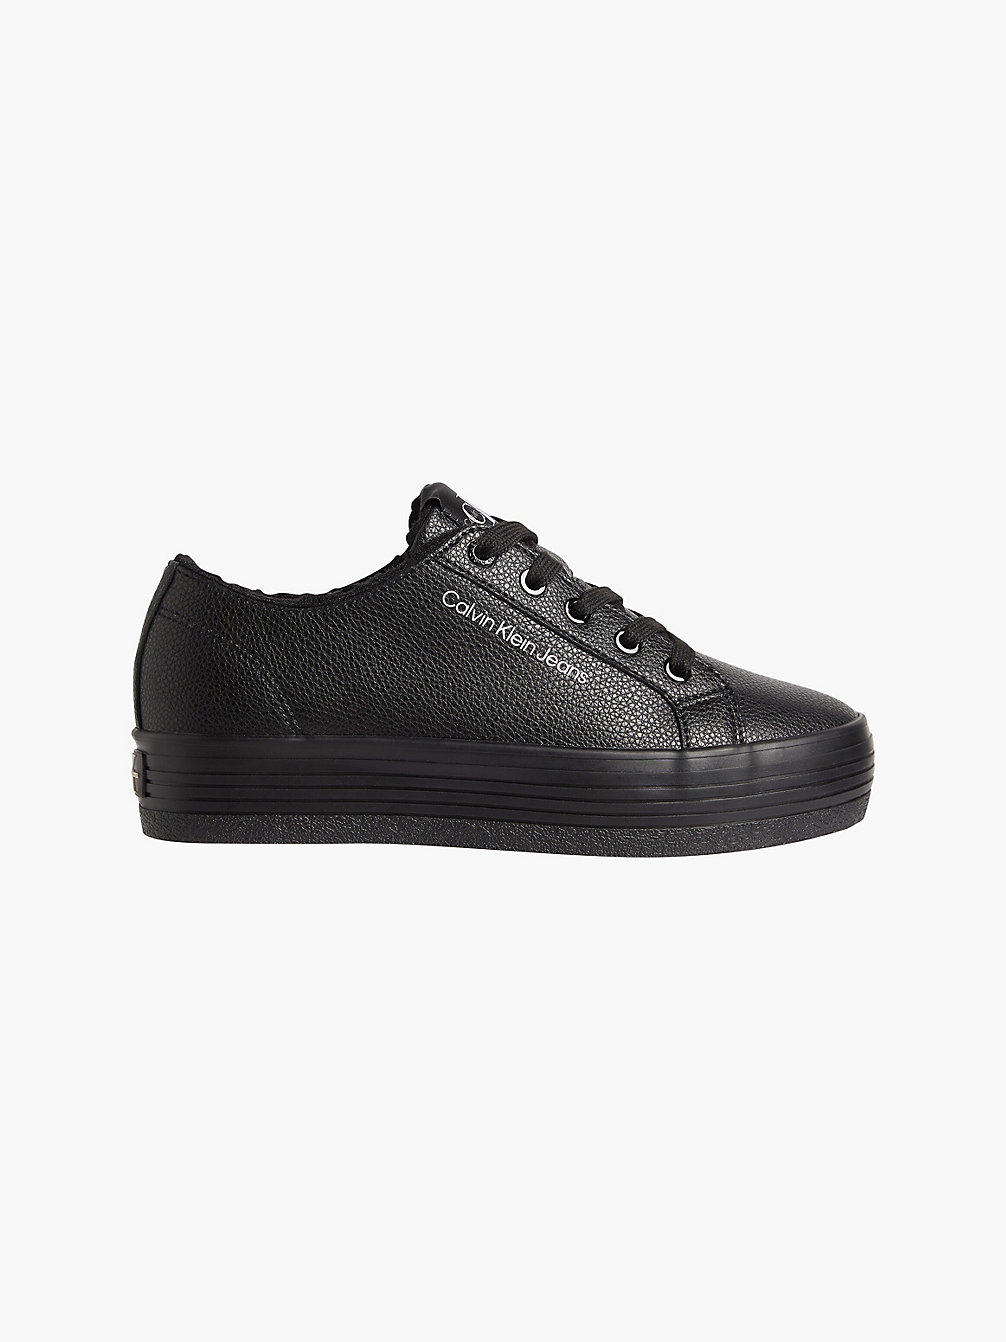 BLACK > Plateau-Sneakers Aus Leder > undefined Damen - Calvin Klein